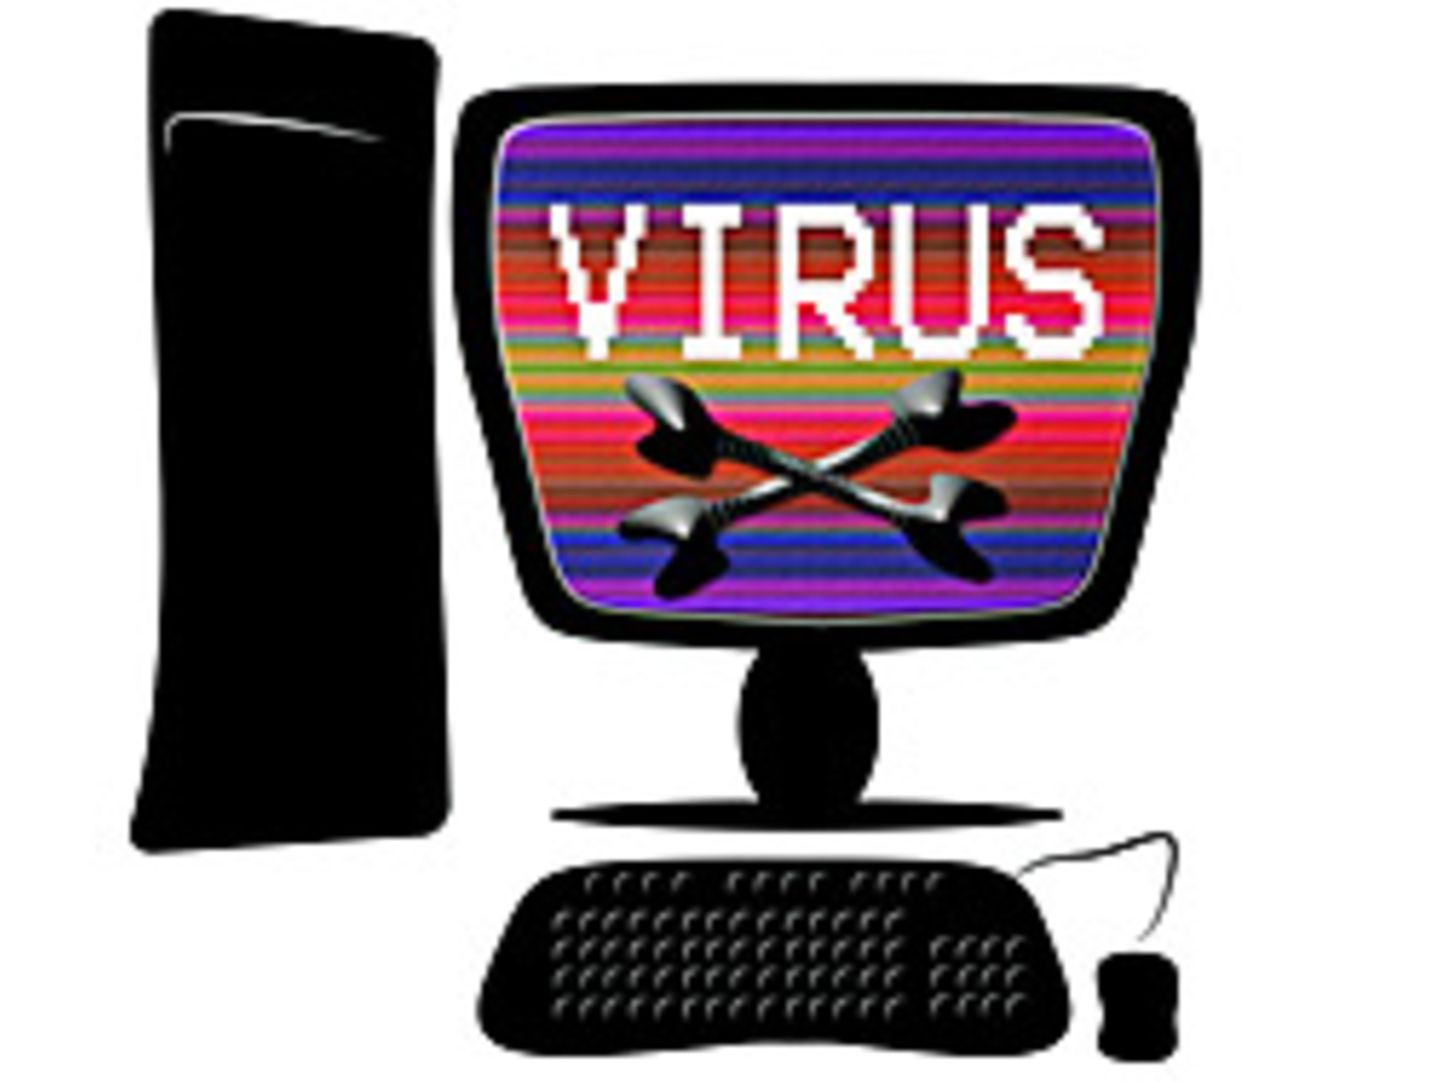 Rechner, die in illegalen Botnetzen verbunden sind, werden über Trojaner-Viren ferngesteuert